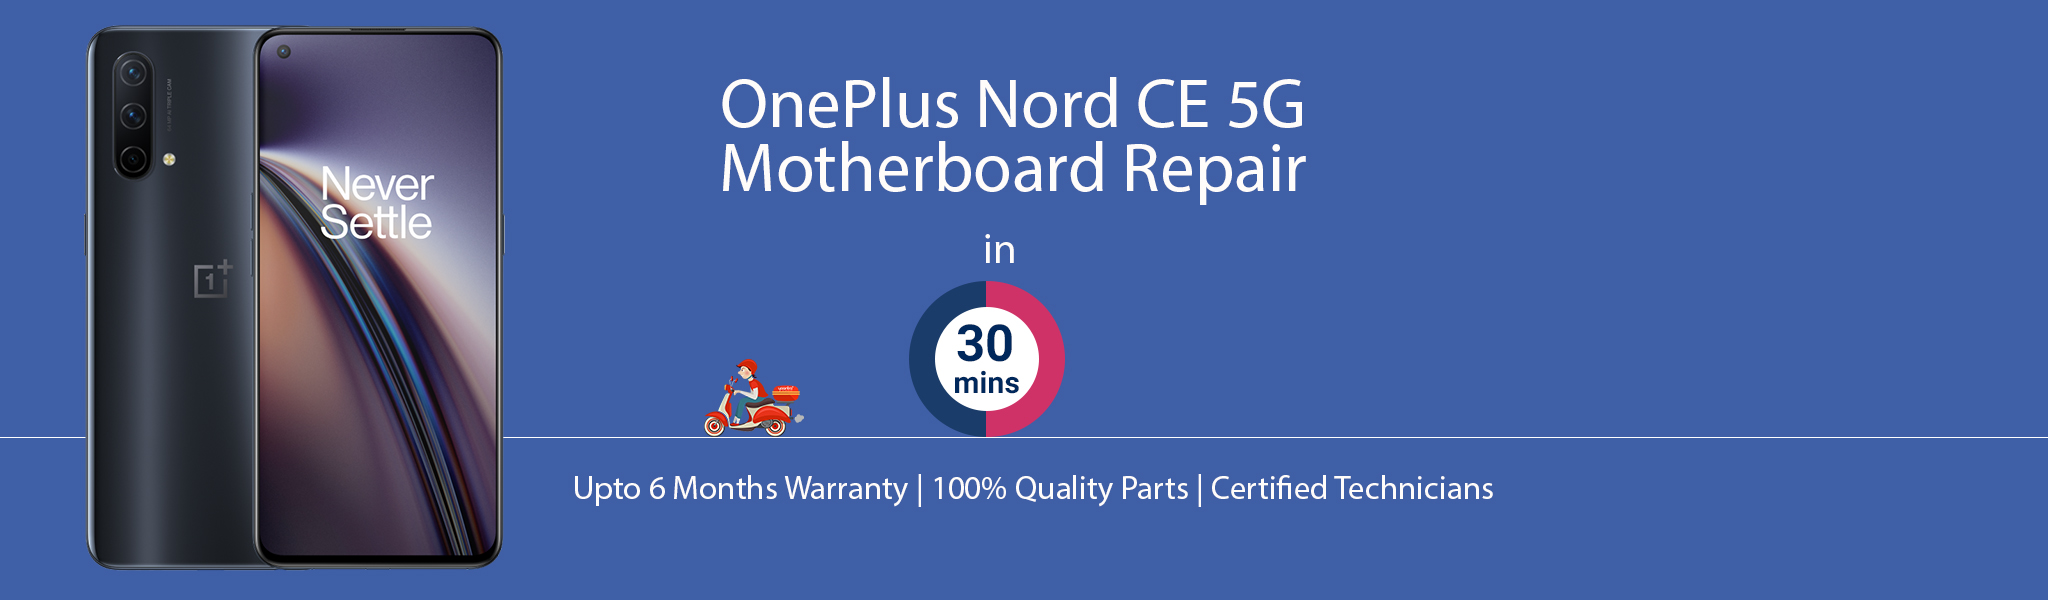 oneplus-nord-ce-5g-motherboard-repair.jpg